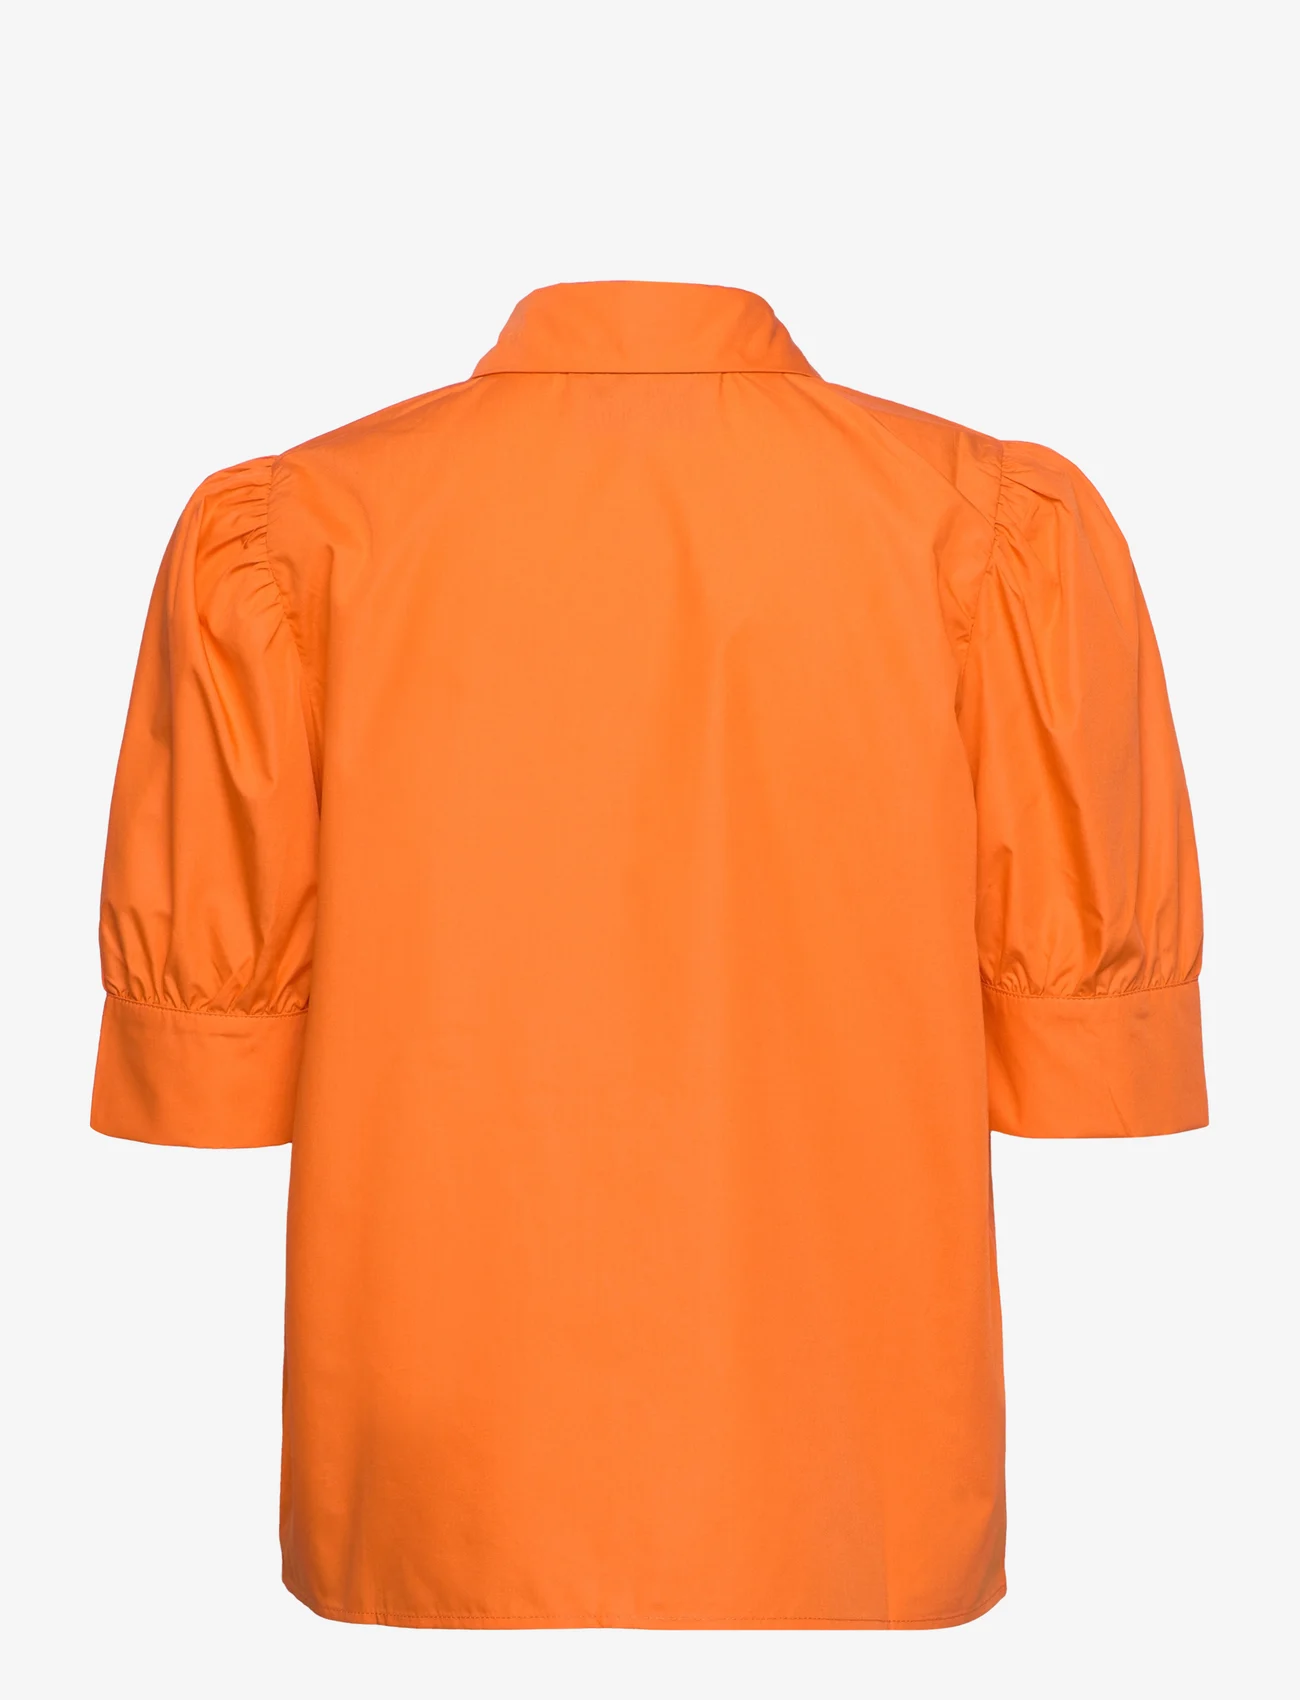 Minus - Molia Skjorte - lühikeste varrukatega särgid - orange peel - 1